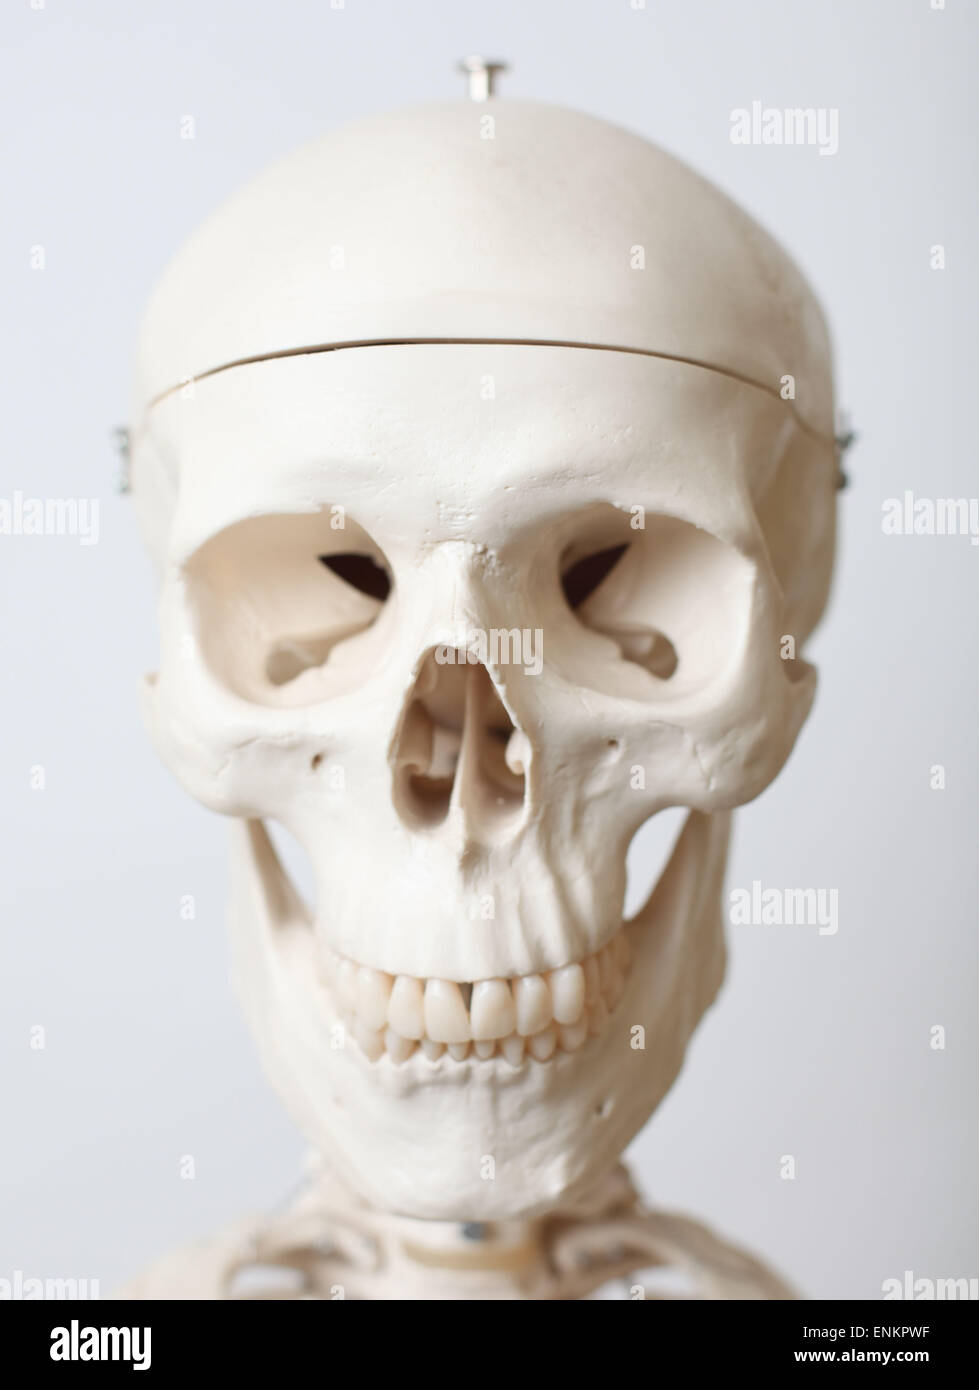 Una dimensione di vita modello di uno scheletro umano. Foto di James Boardman Foto Stock